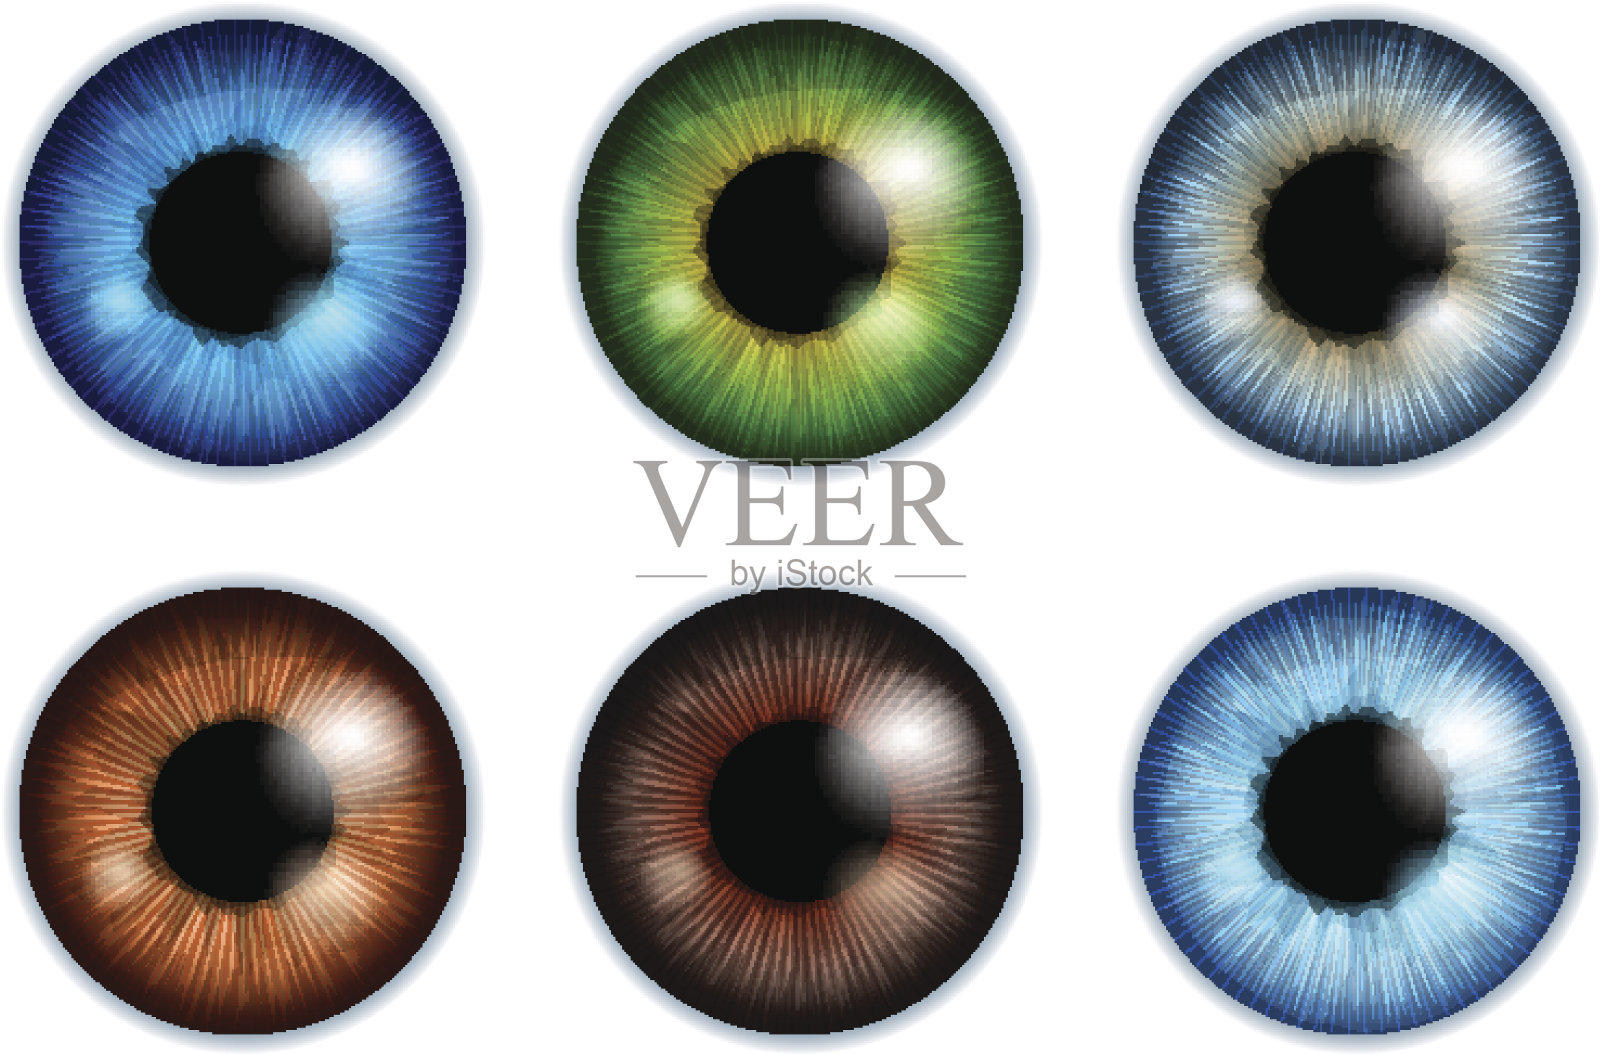 人眼眼球虹膜瞳孔颜色组合插画图片素材